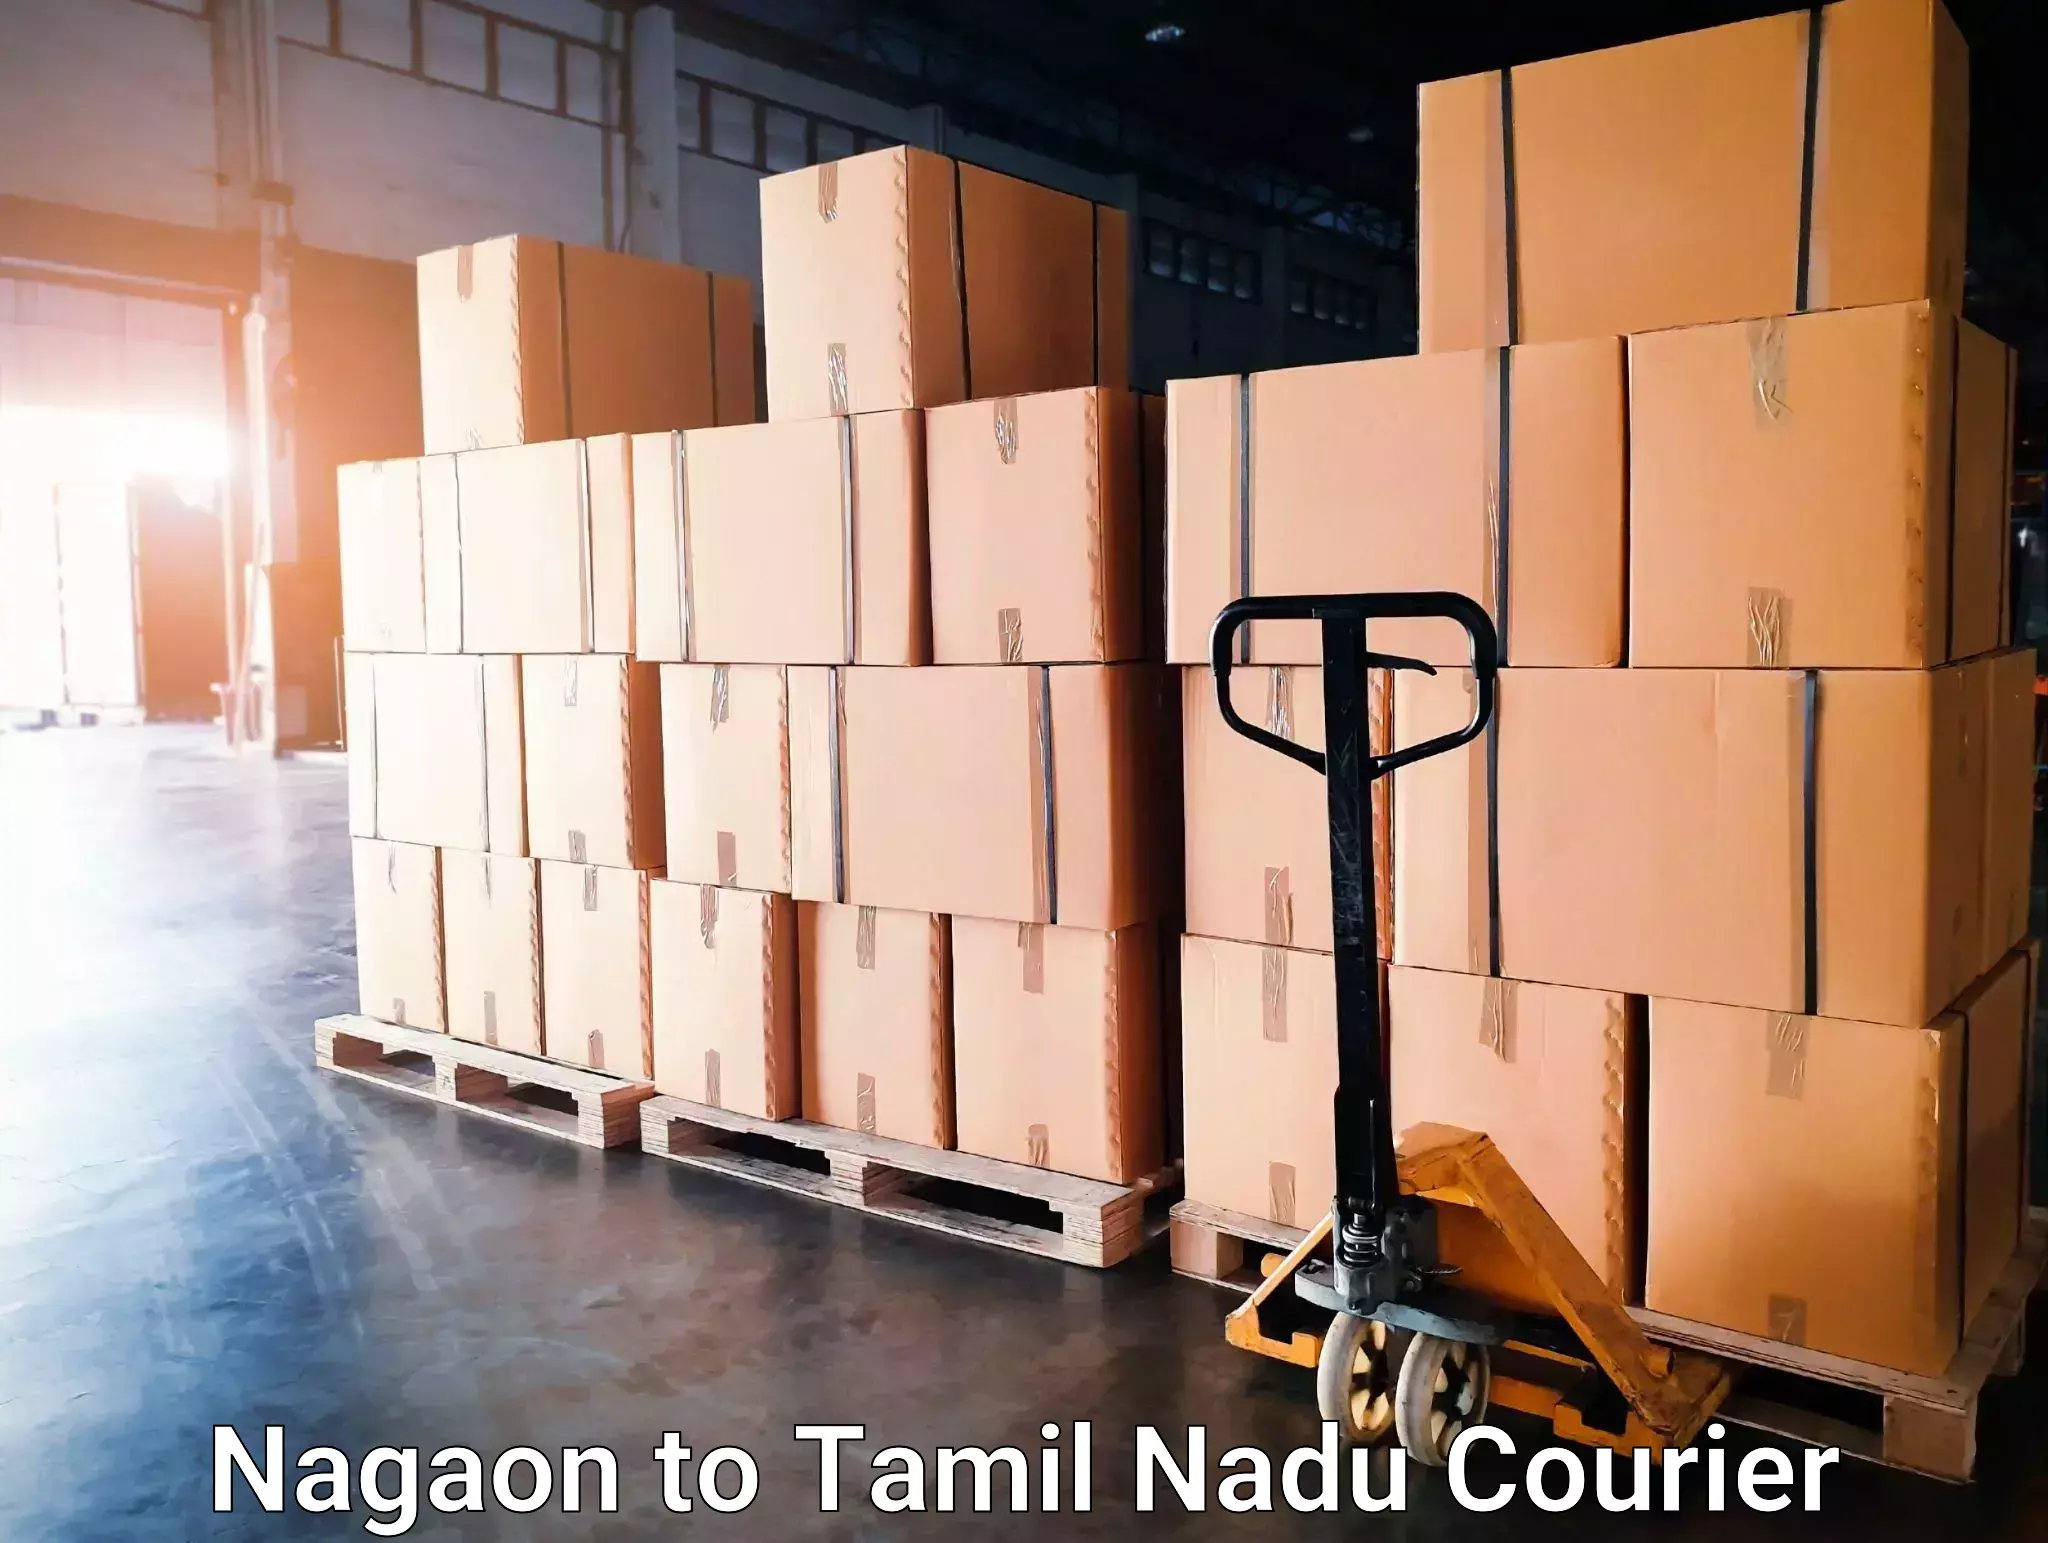 Reliable courier service Nagaon to Villupuram